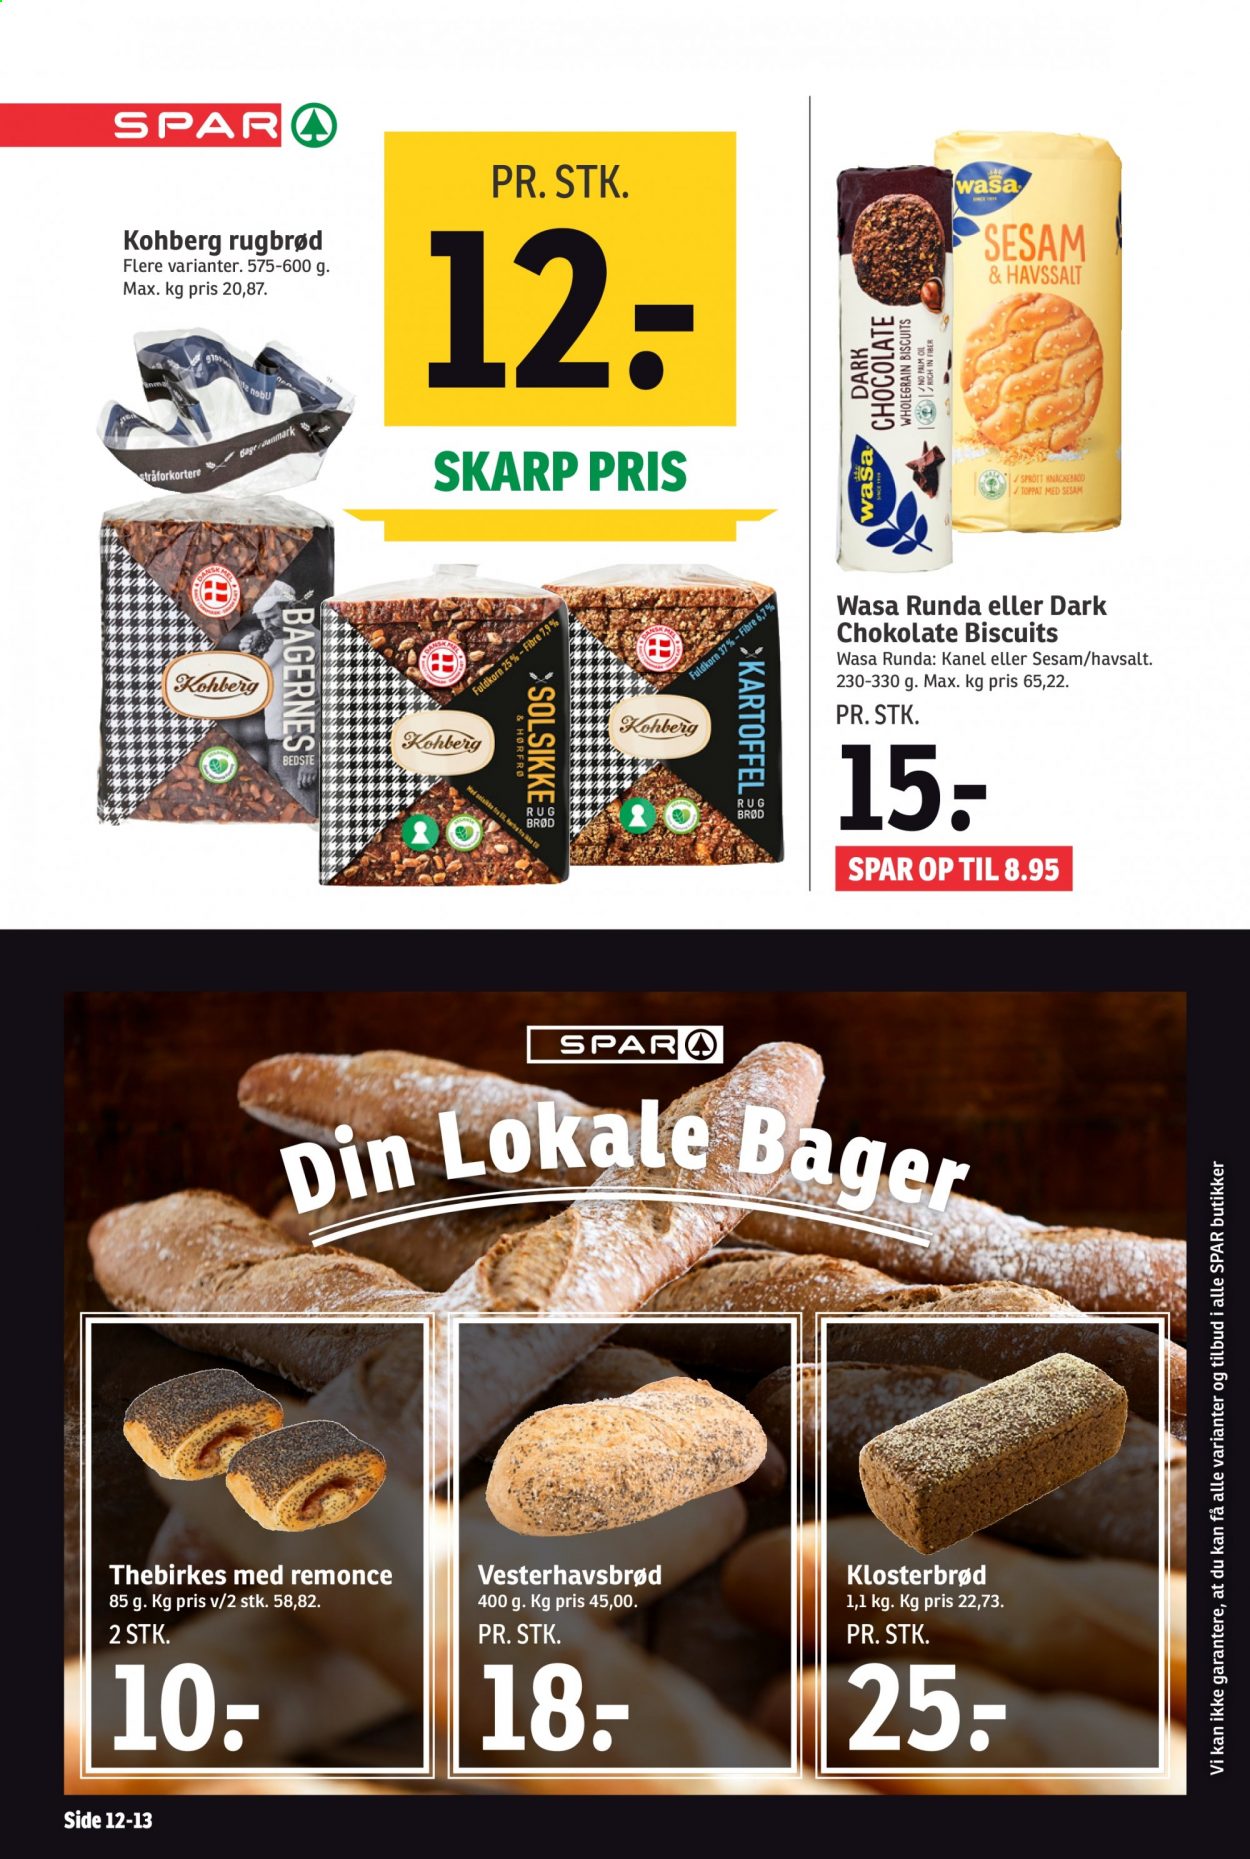 thumbnail - SPAR tilbud  - 5.6.2021 - 11.6.2021 - tilbudsprodukter - rugbrød, biscuits, Wasa, hørfrø. Side 12.